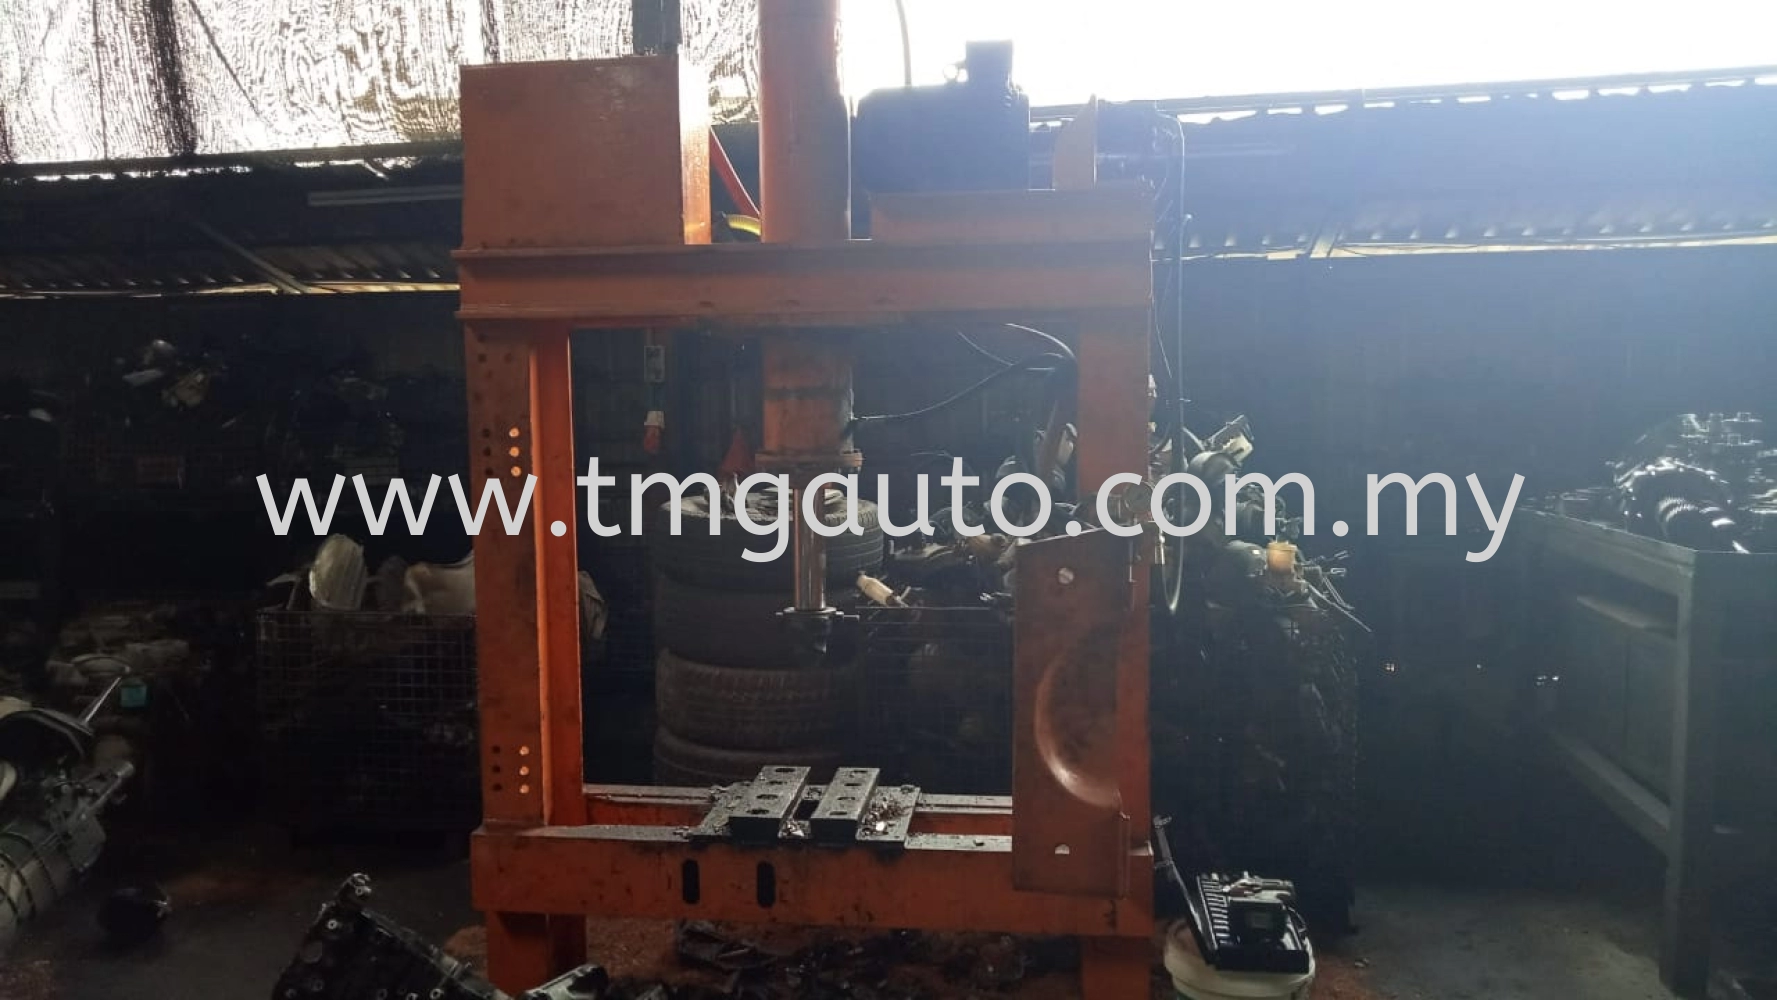 Industrial Hydraulic Press Machinery